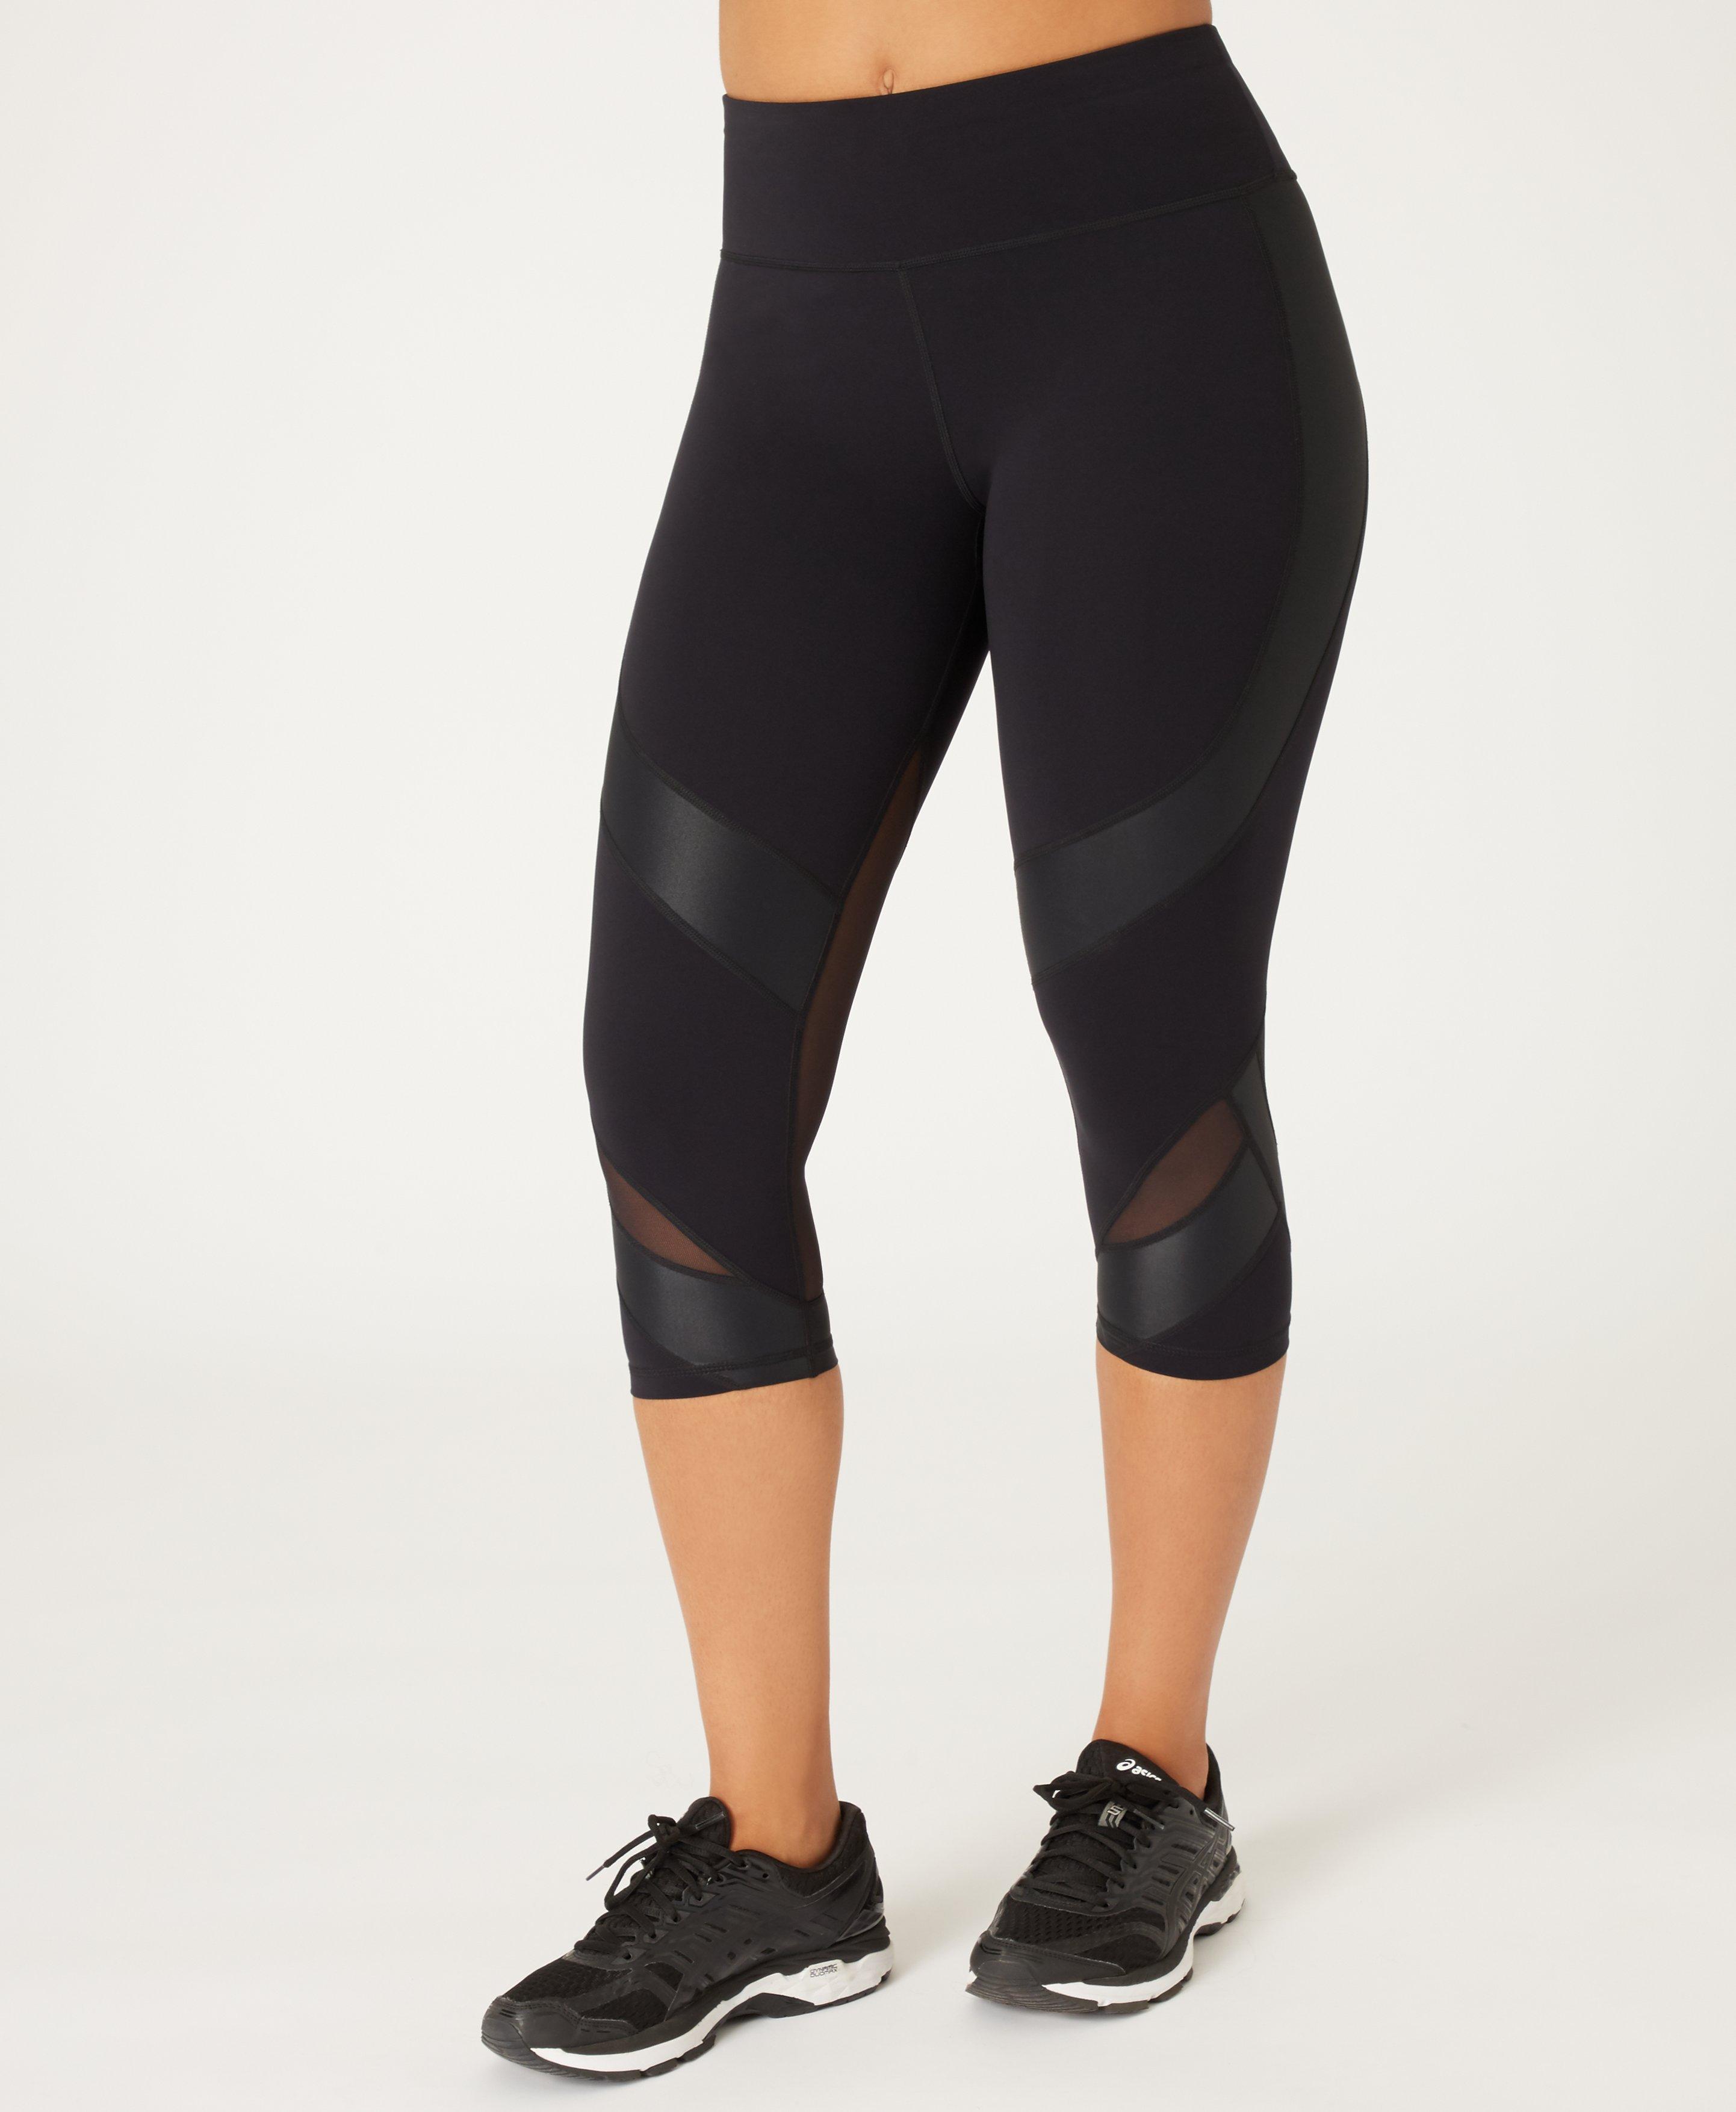 mesh workout leggings